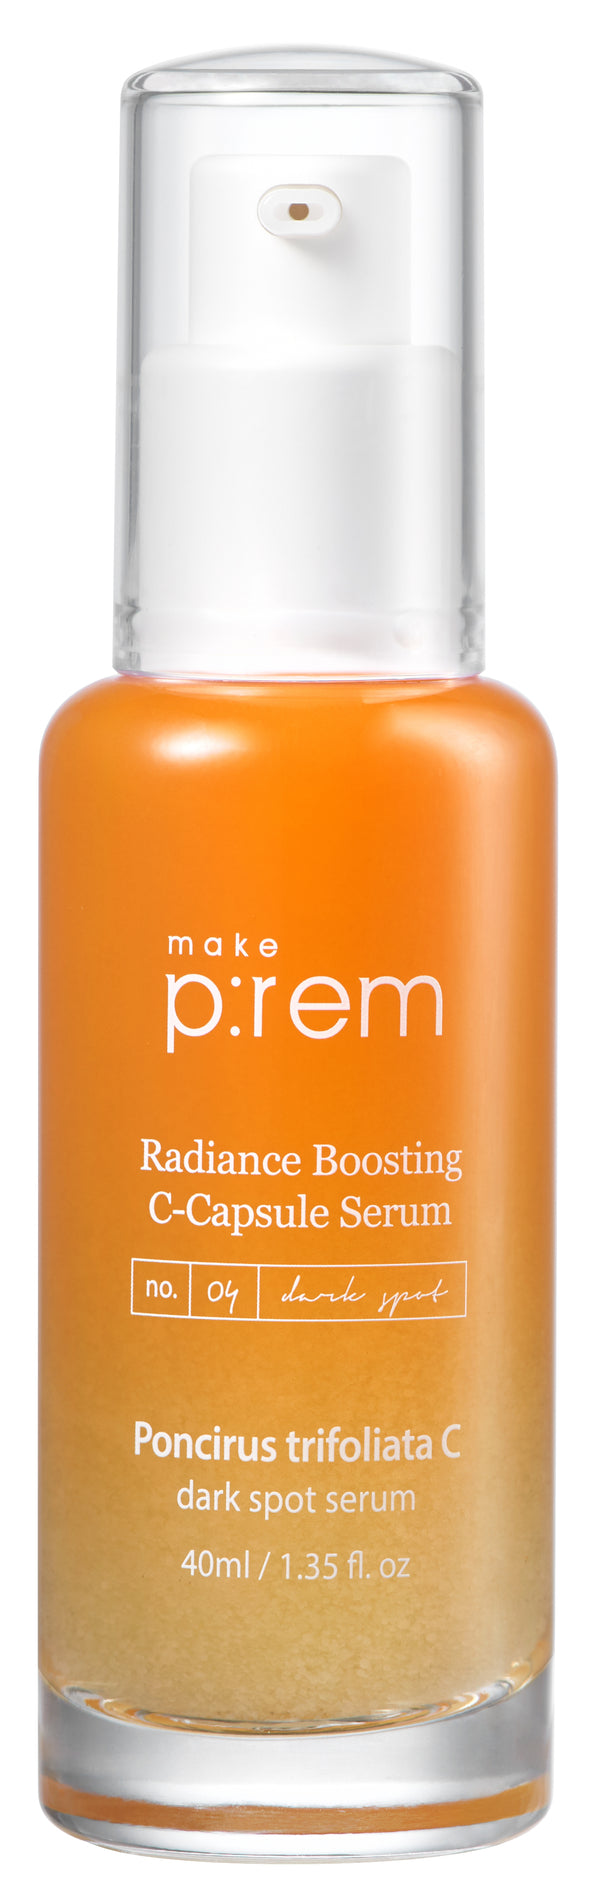 Radiance Boosting C-Capsule Serum